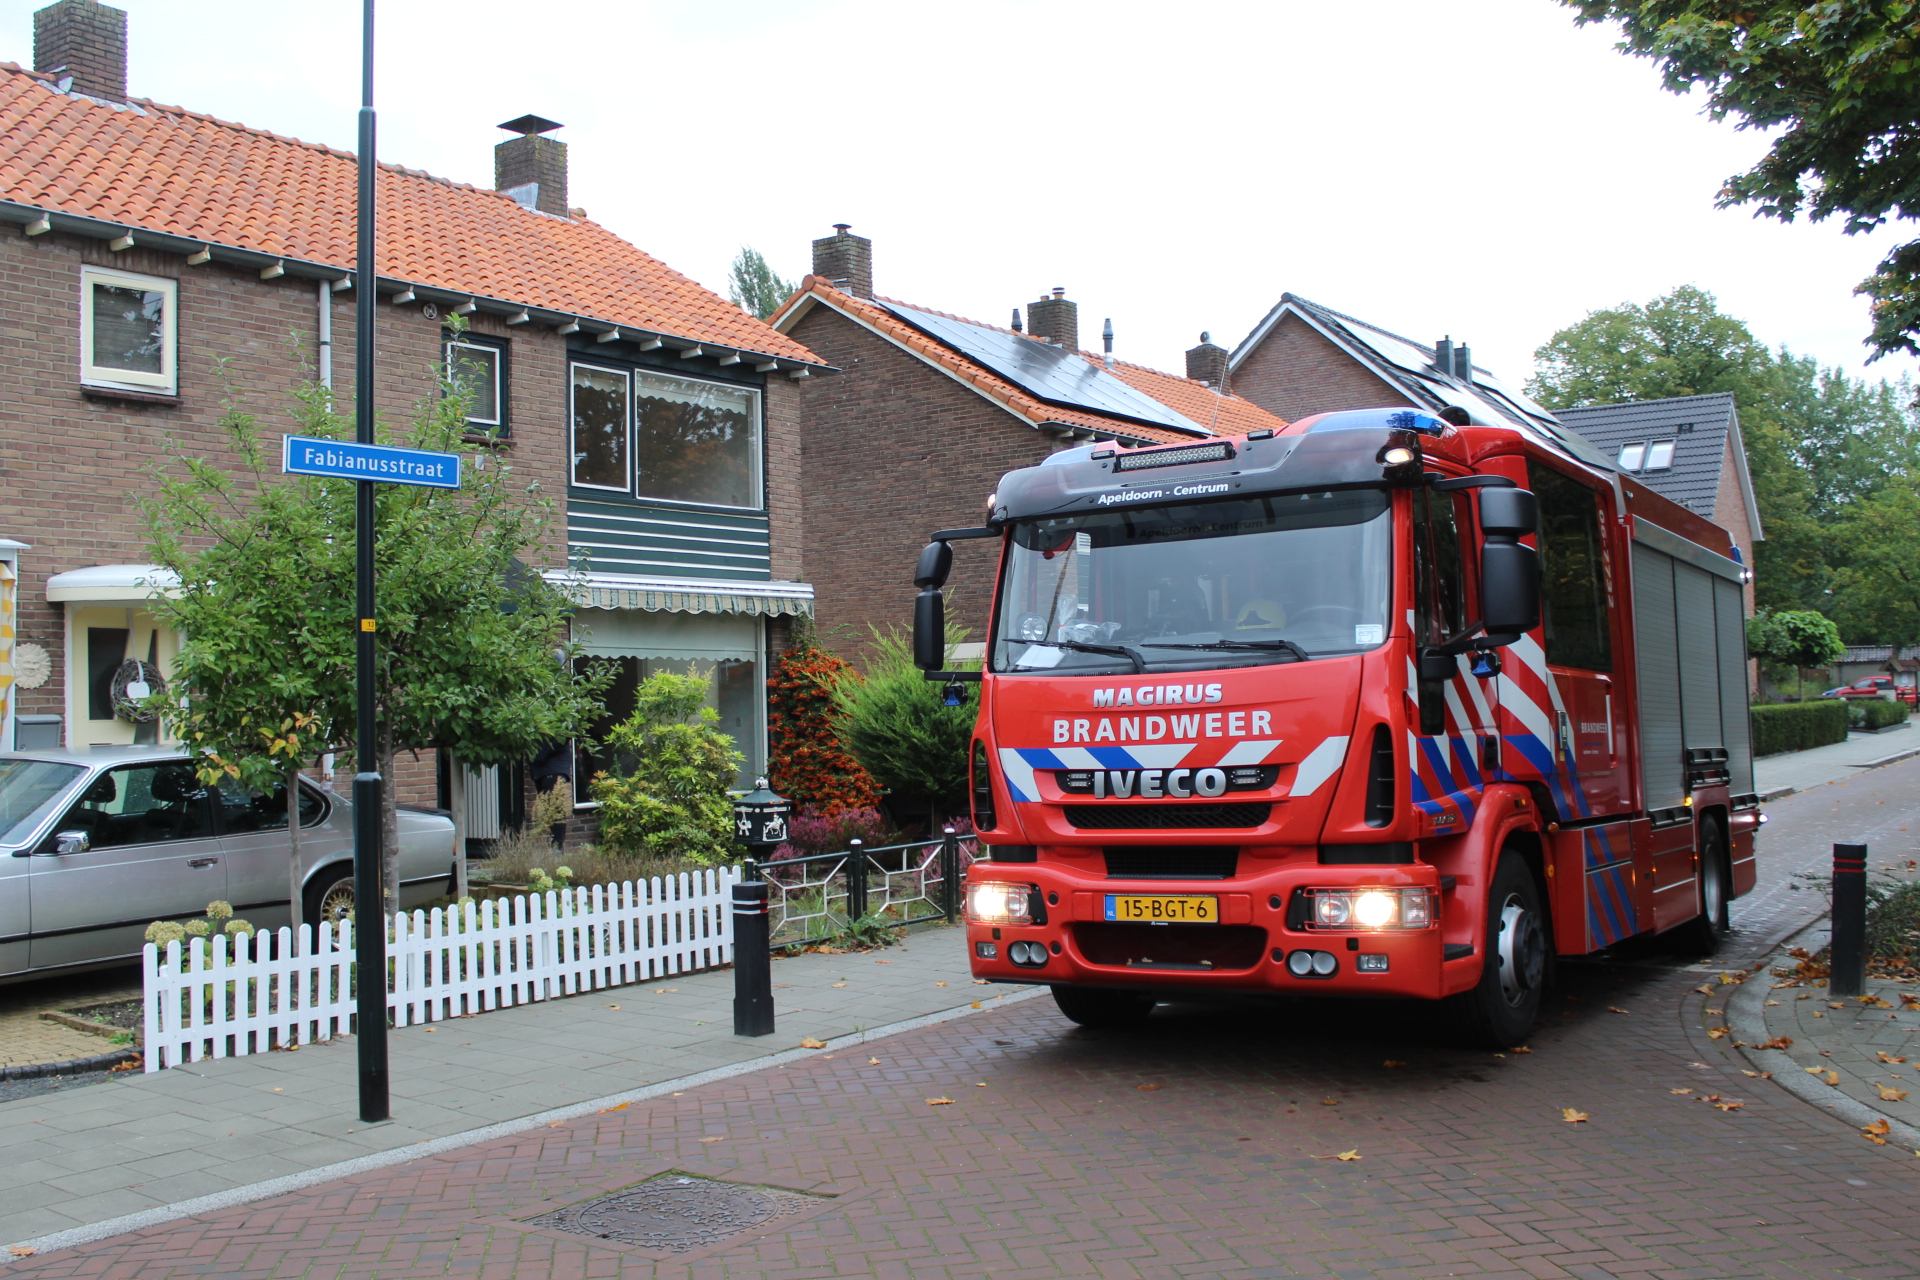 ‘Woningbrand’ aan de Fabianusstraat in Apeldoorn-Zuid